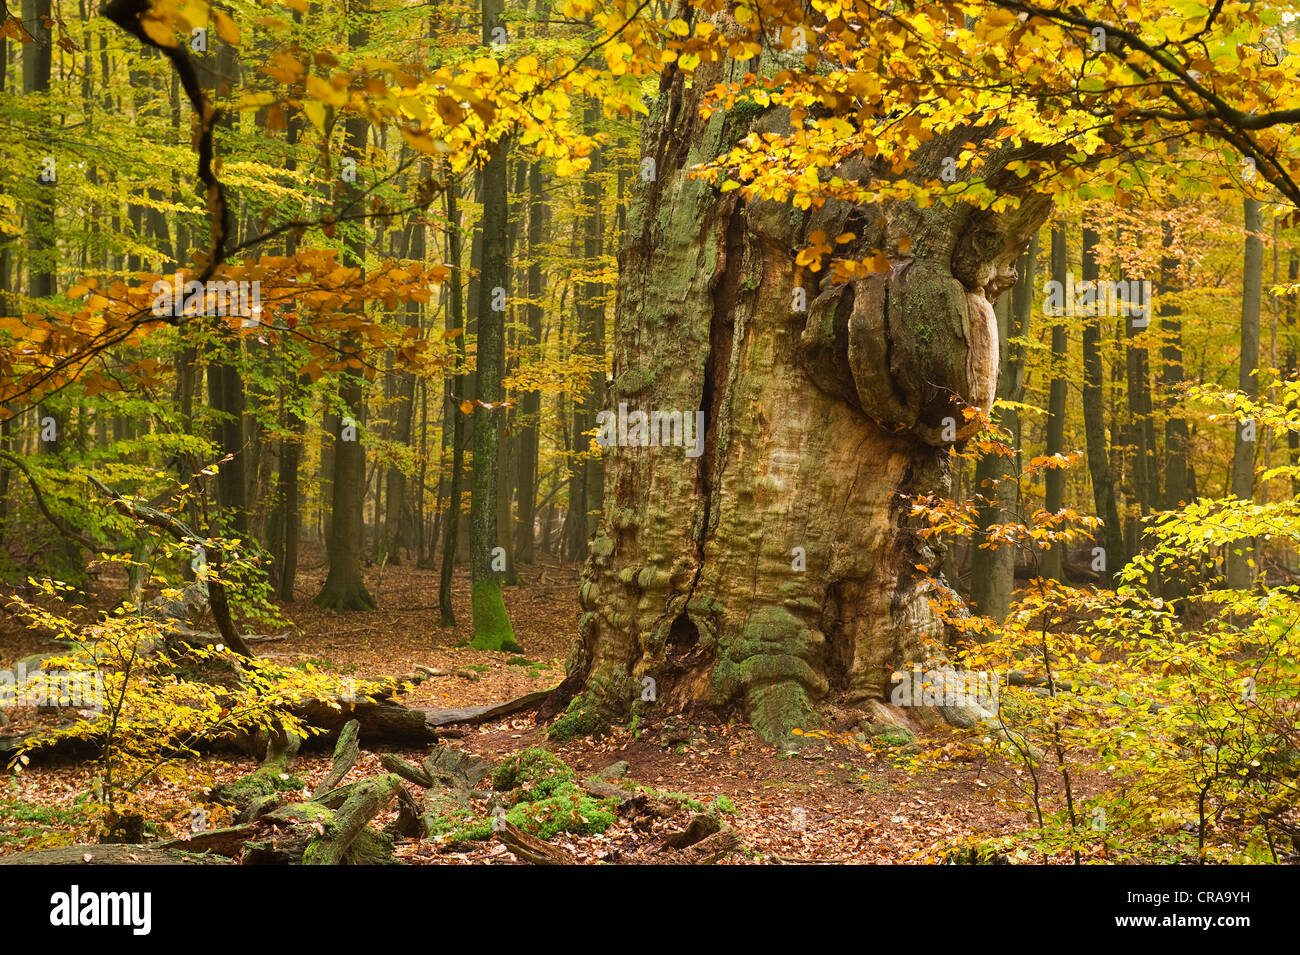 Eiche (Quercus), Urwaldrelikt Sababurg Urwald, Reinhardswald, Hofgeismar, Hessen, Norddeutschland, Europa Stockfoto